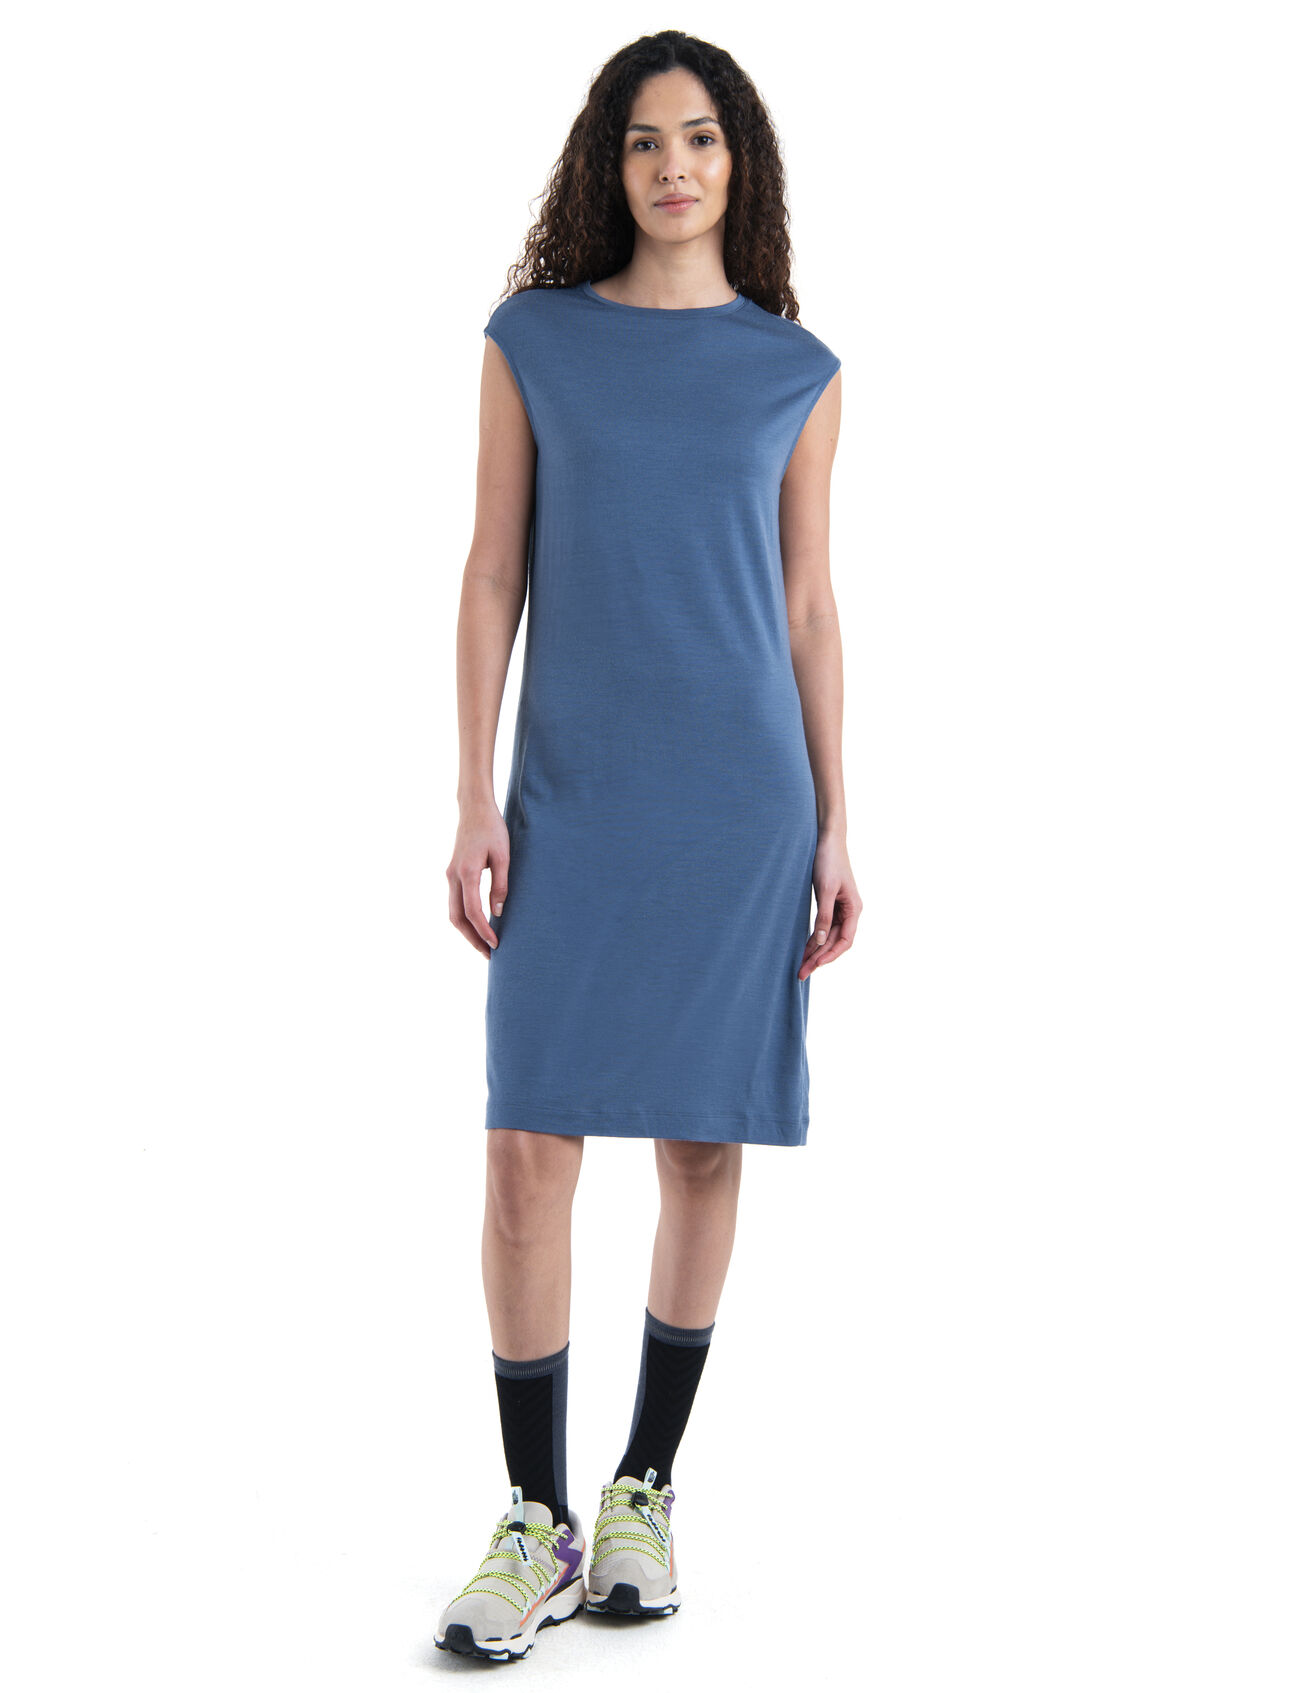 Merino Granary Ärmelloses Kleid Damen Ein Kleid, das sich leicht und vielseitig stylen lässt, kombiniert mit den natürlichen Vorteilen von 100% Merinowolle, das ärmellose Granary Kleid ist für nahezu jeden Anlass bereit. 